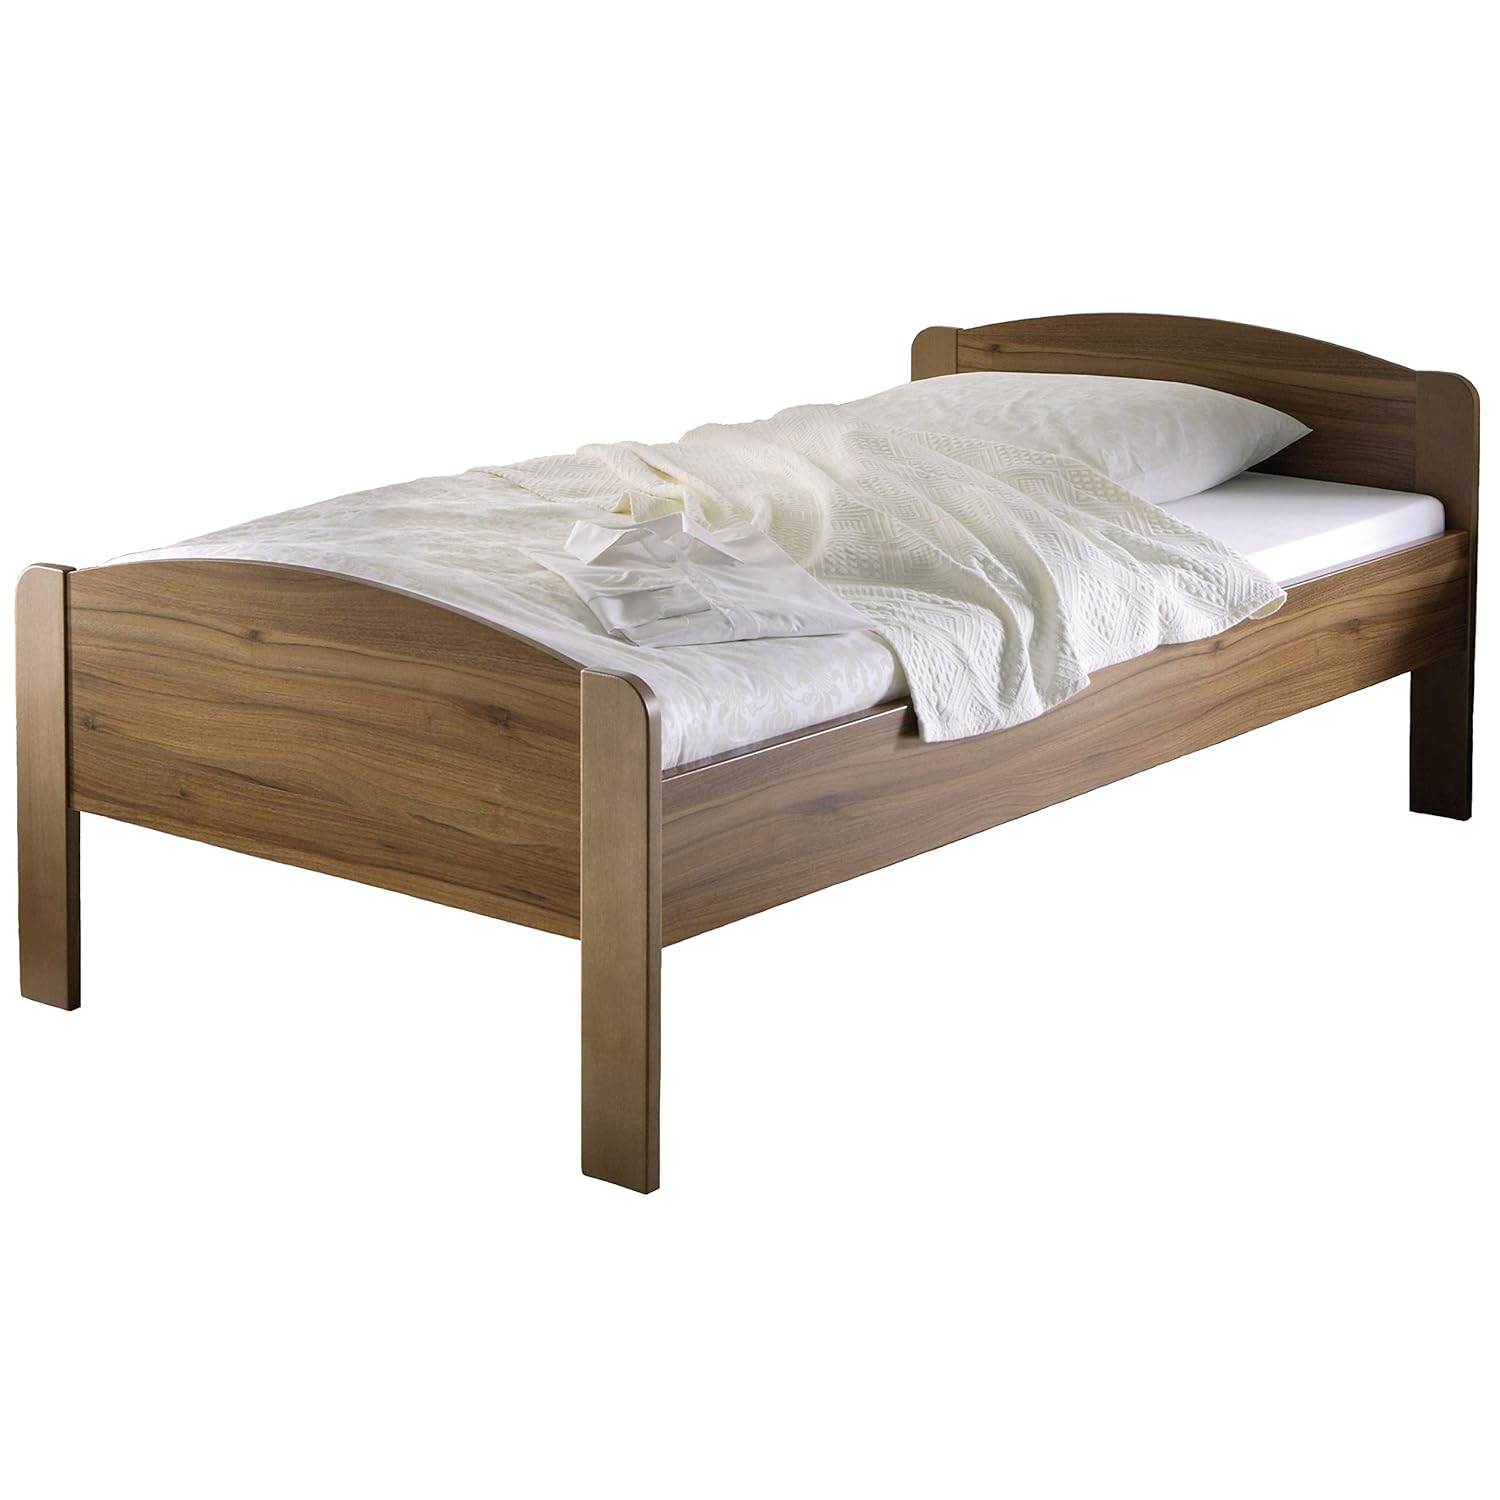 Купить кровать на озоне с матрасом. Кровать односпальная 80х190 дерево Паола. Кровать Вега 90/200 односпалка. Кровать односпальная Келли 90. Кровать одноместная деревянная.